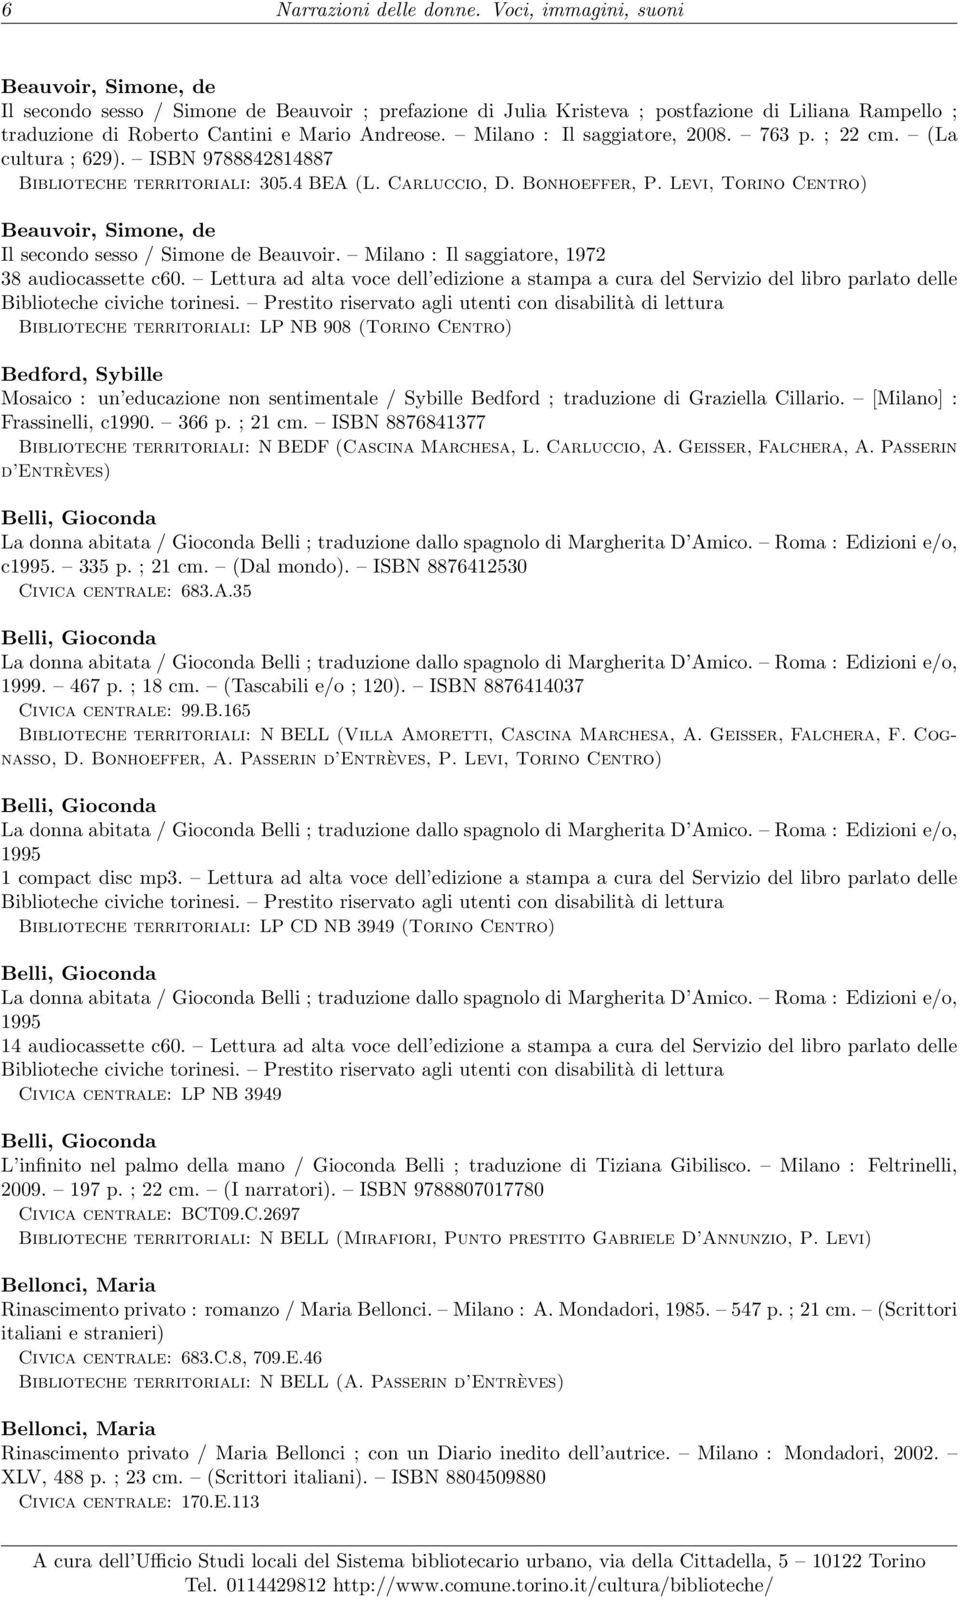 Milano : Il saggiatore, 2008. 763 p. ; 22 cm. (La cultura ; 629). ISBN 9788842814887 Biblioteche territoriali: 305.4 BEA (L. Carluccio, D. Bonhoeffer, P.